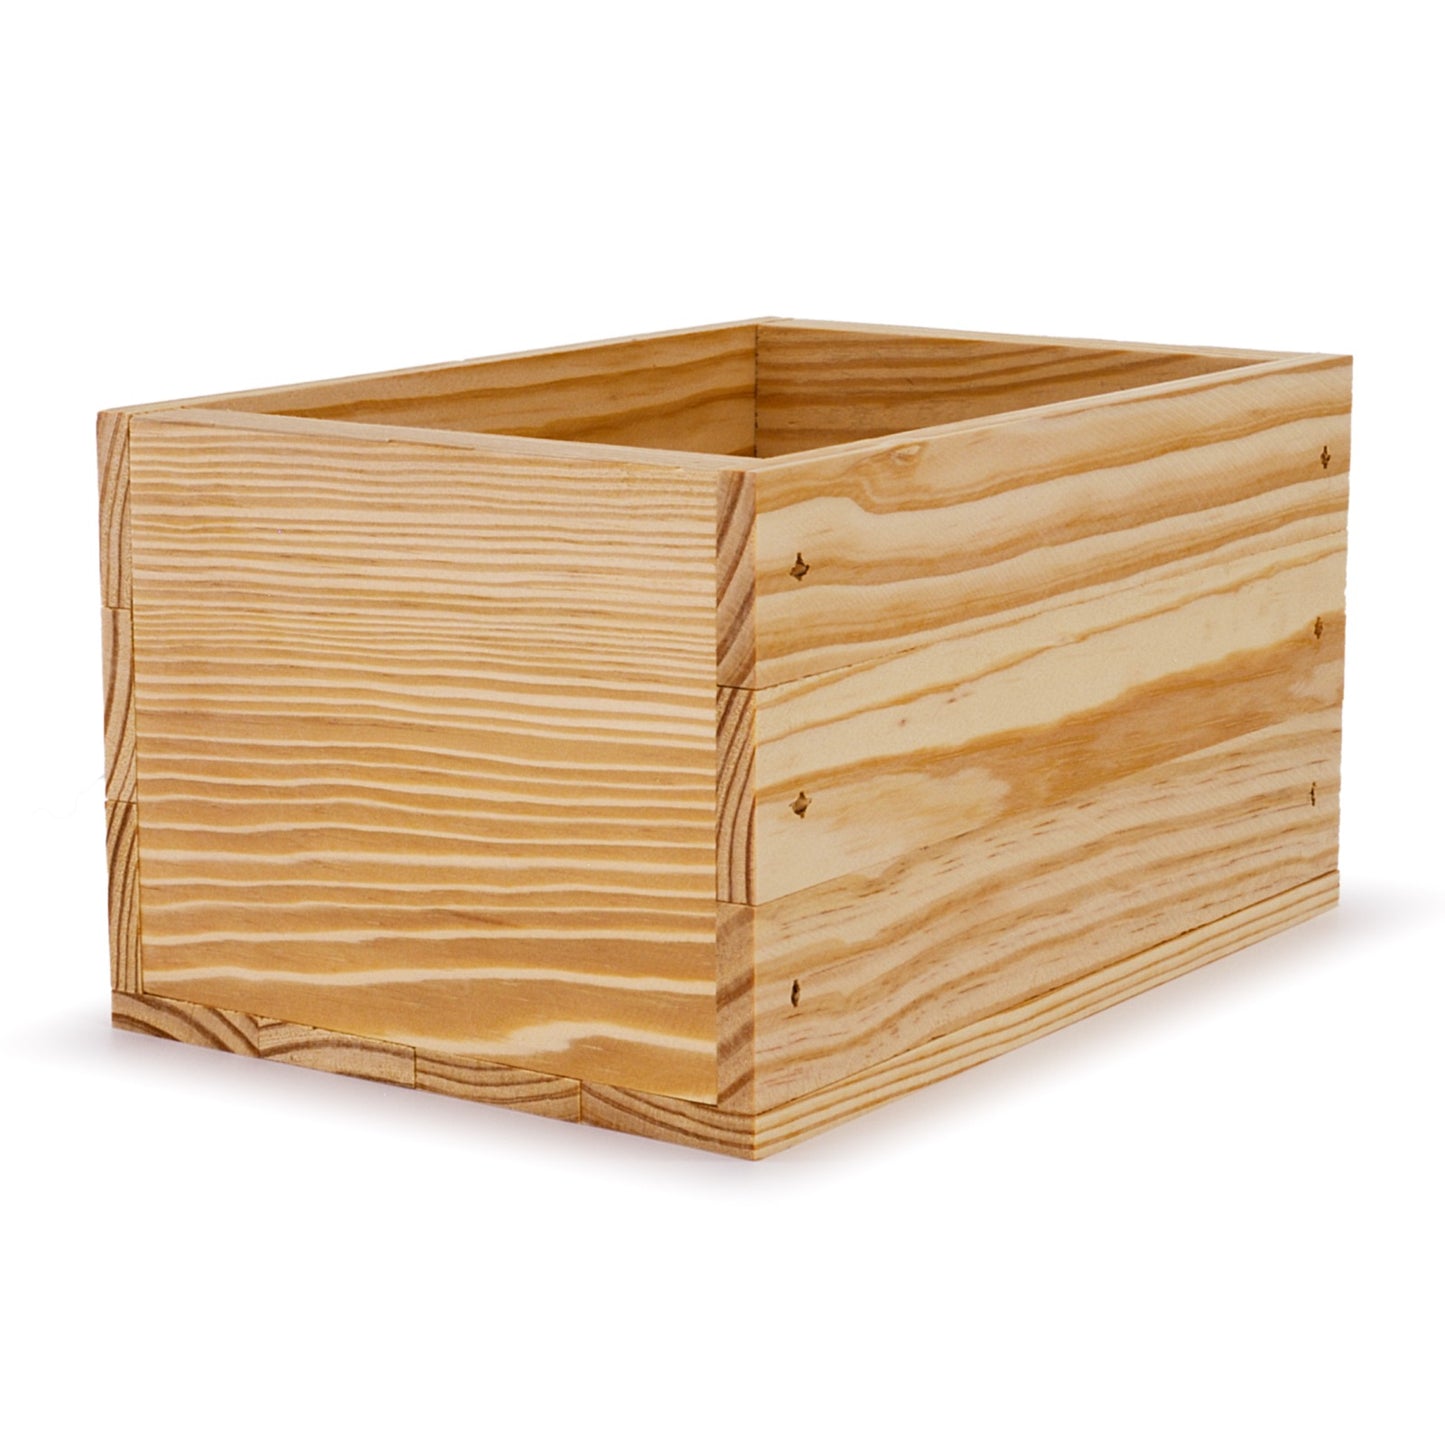 Small wooden crate 9x6.25x5.25, 6-BX-9-6.25-5.25-NX-NW-NL, 12-BX-9-6.25-5.25-NX-NW-NL, 24-BX-9-6.25-5.25-NX-NW-NL, 48-BX-9-6.25-5.25-NX-NW-NL, 96-BX-9-6.25-5.25-NX-NW-NL